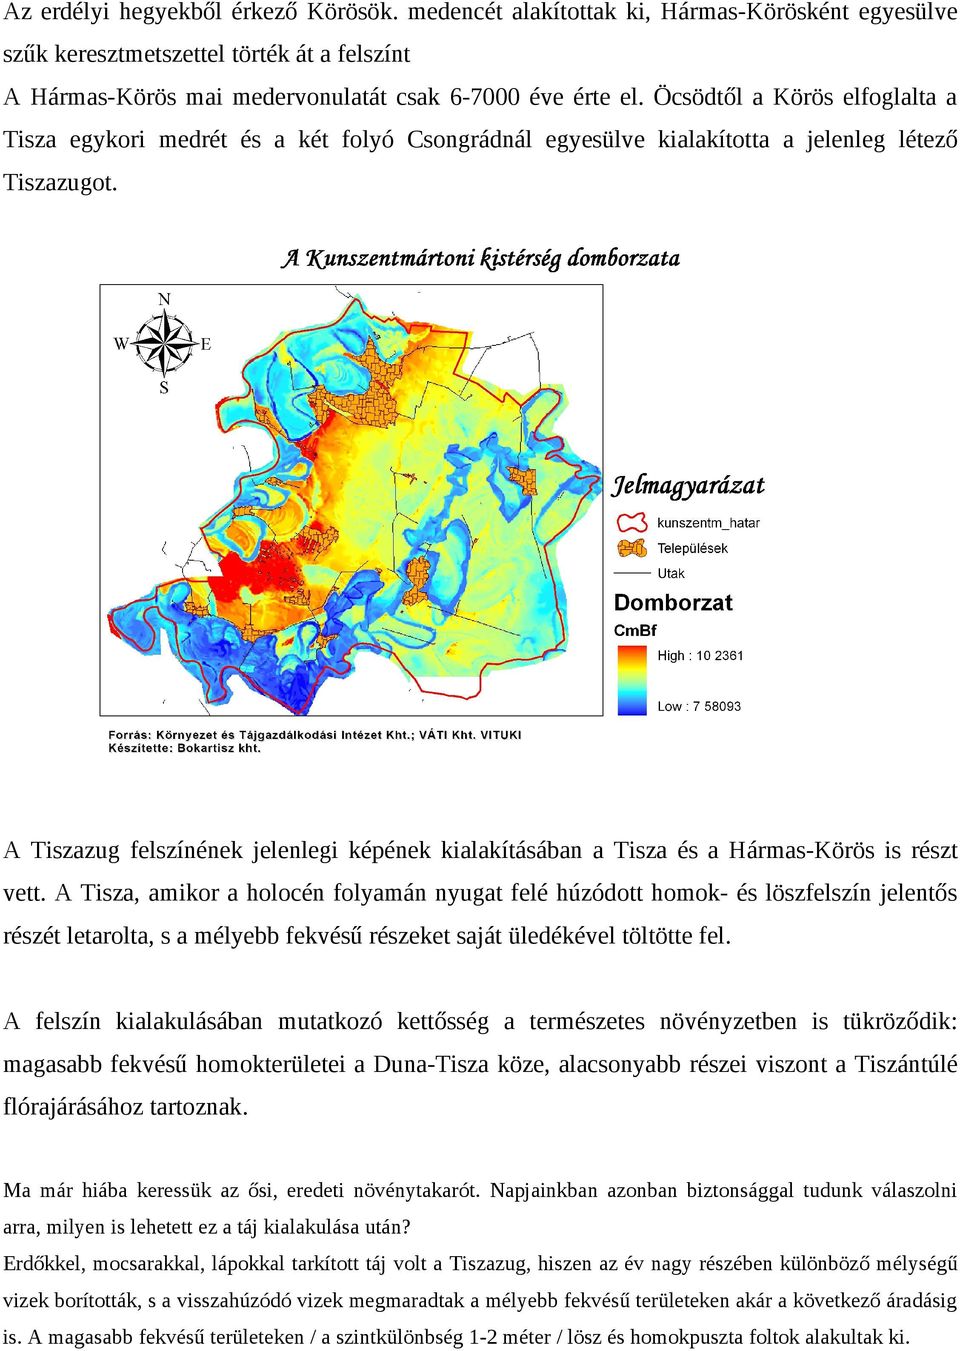 A Tiszazug felszínének jelenlegi képének kialakításában a Tisza és a Hármas-Körös is részt vett.